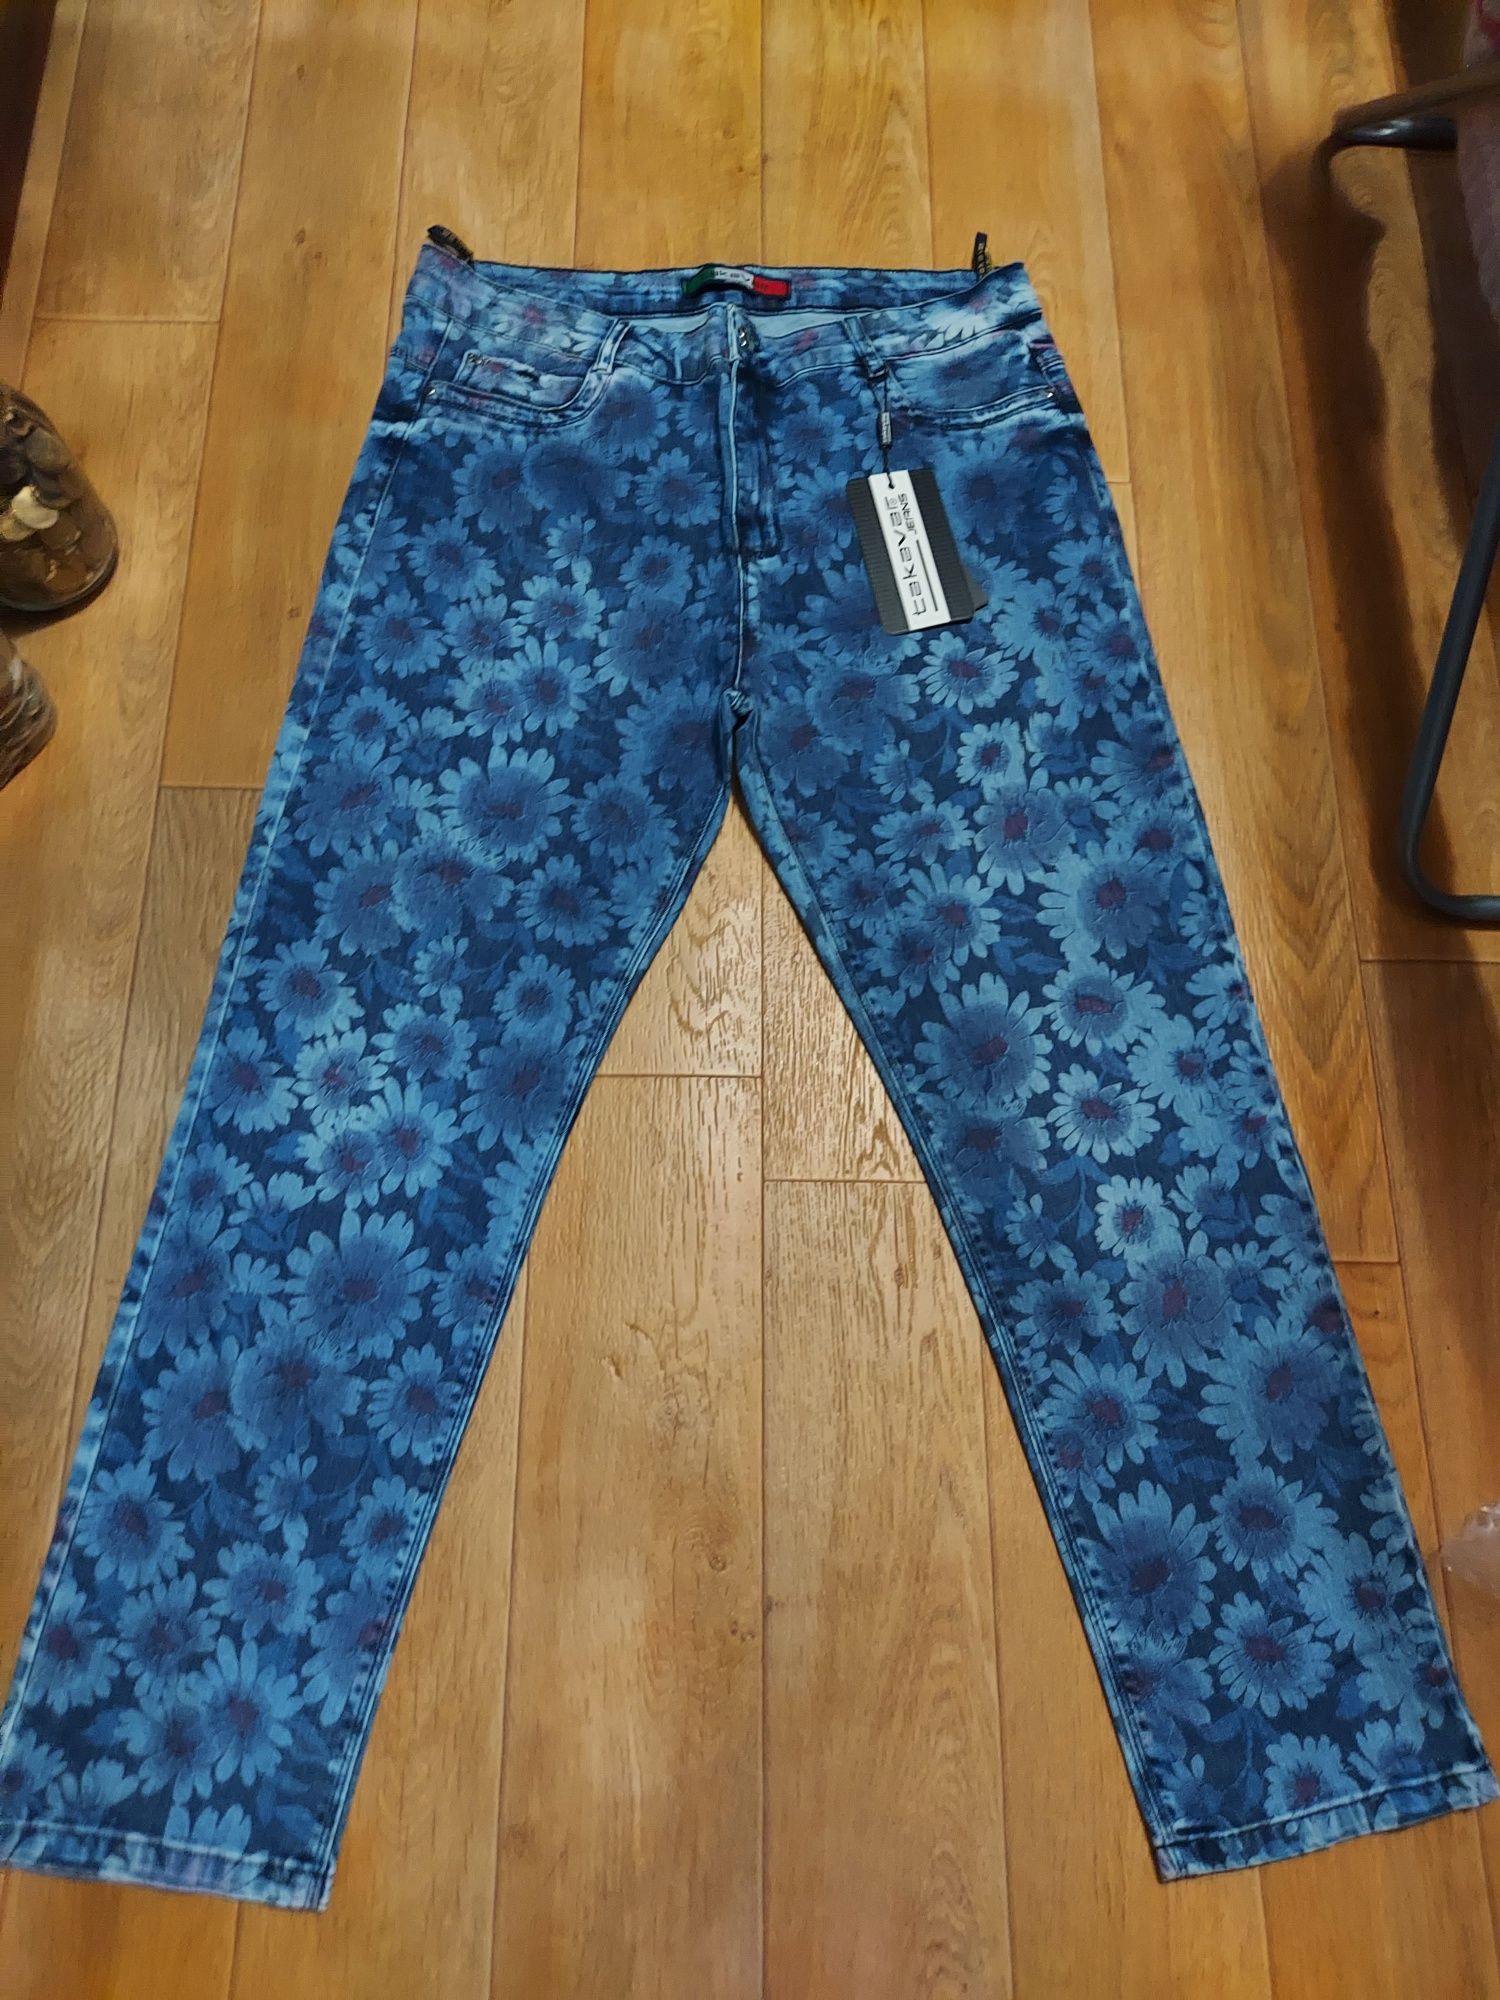 Батал !Sassofono, Takavar модные джинсы с цветами. 56.